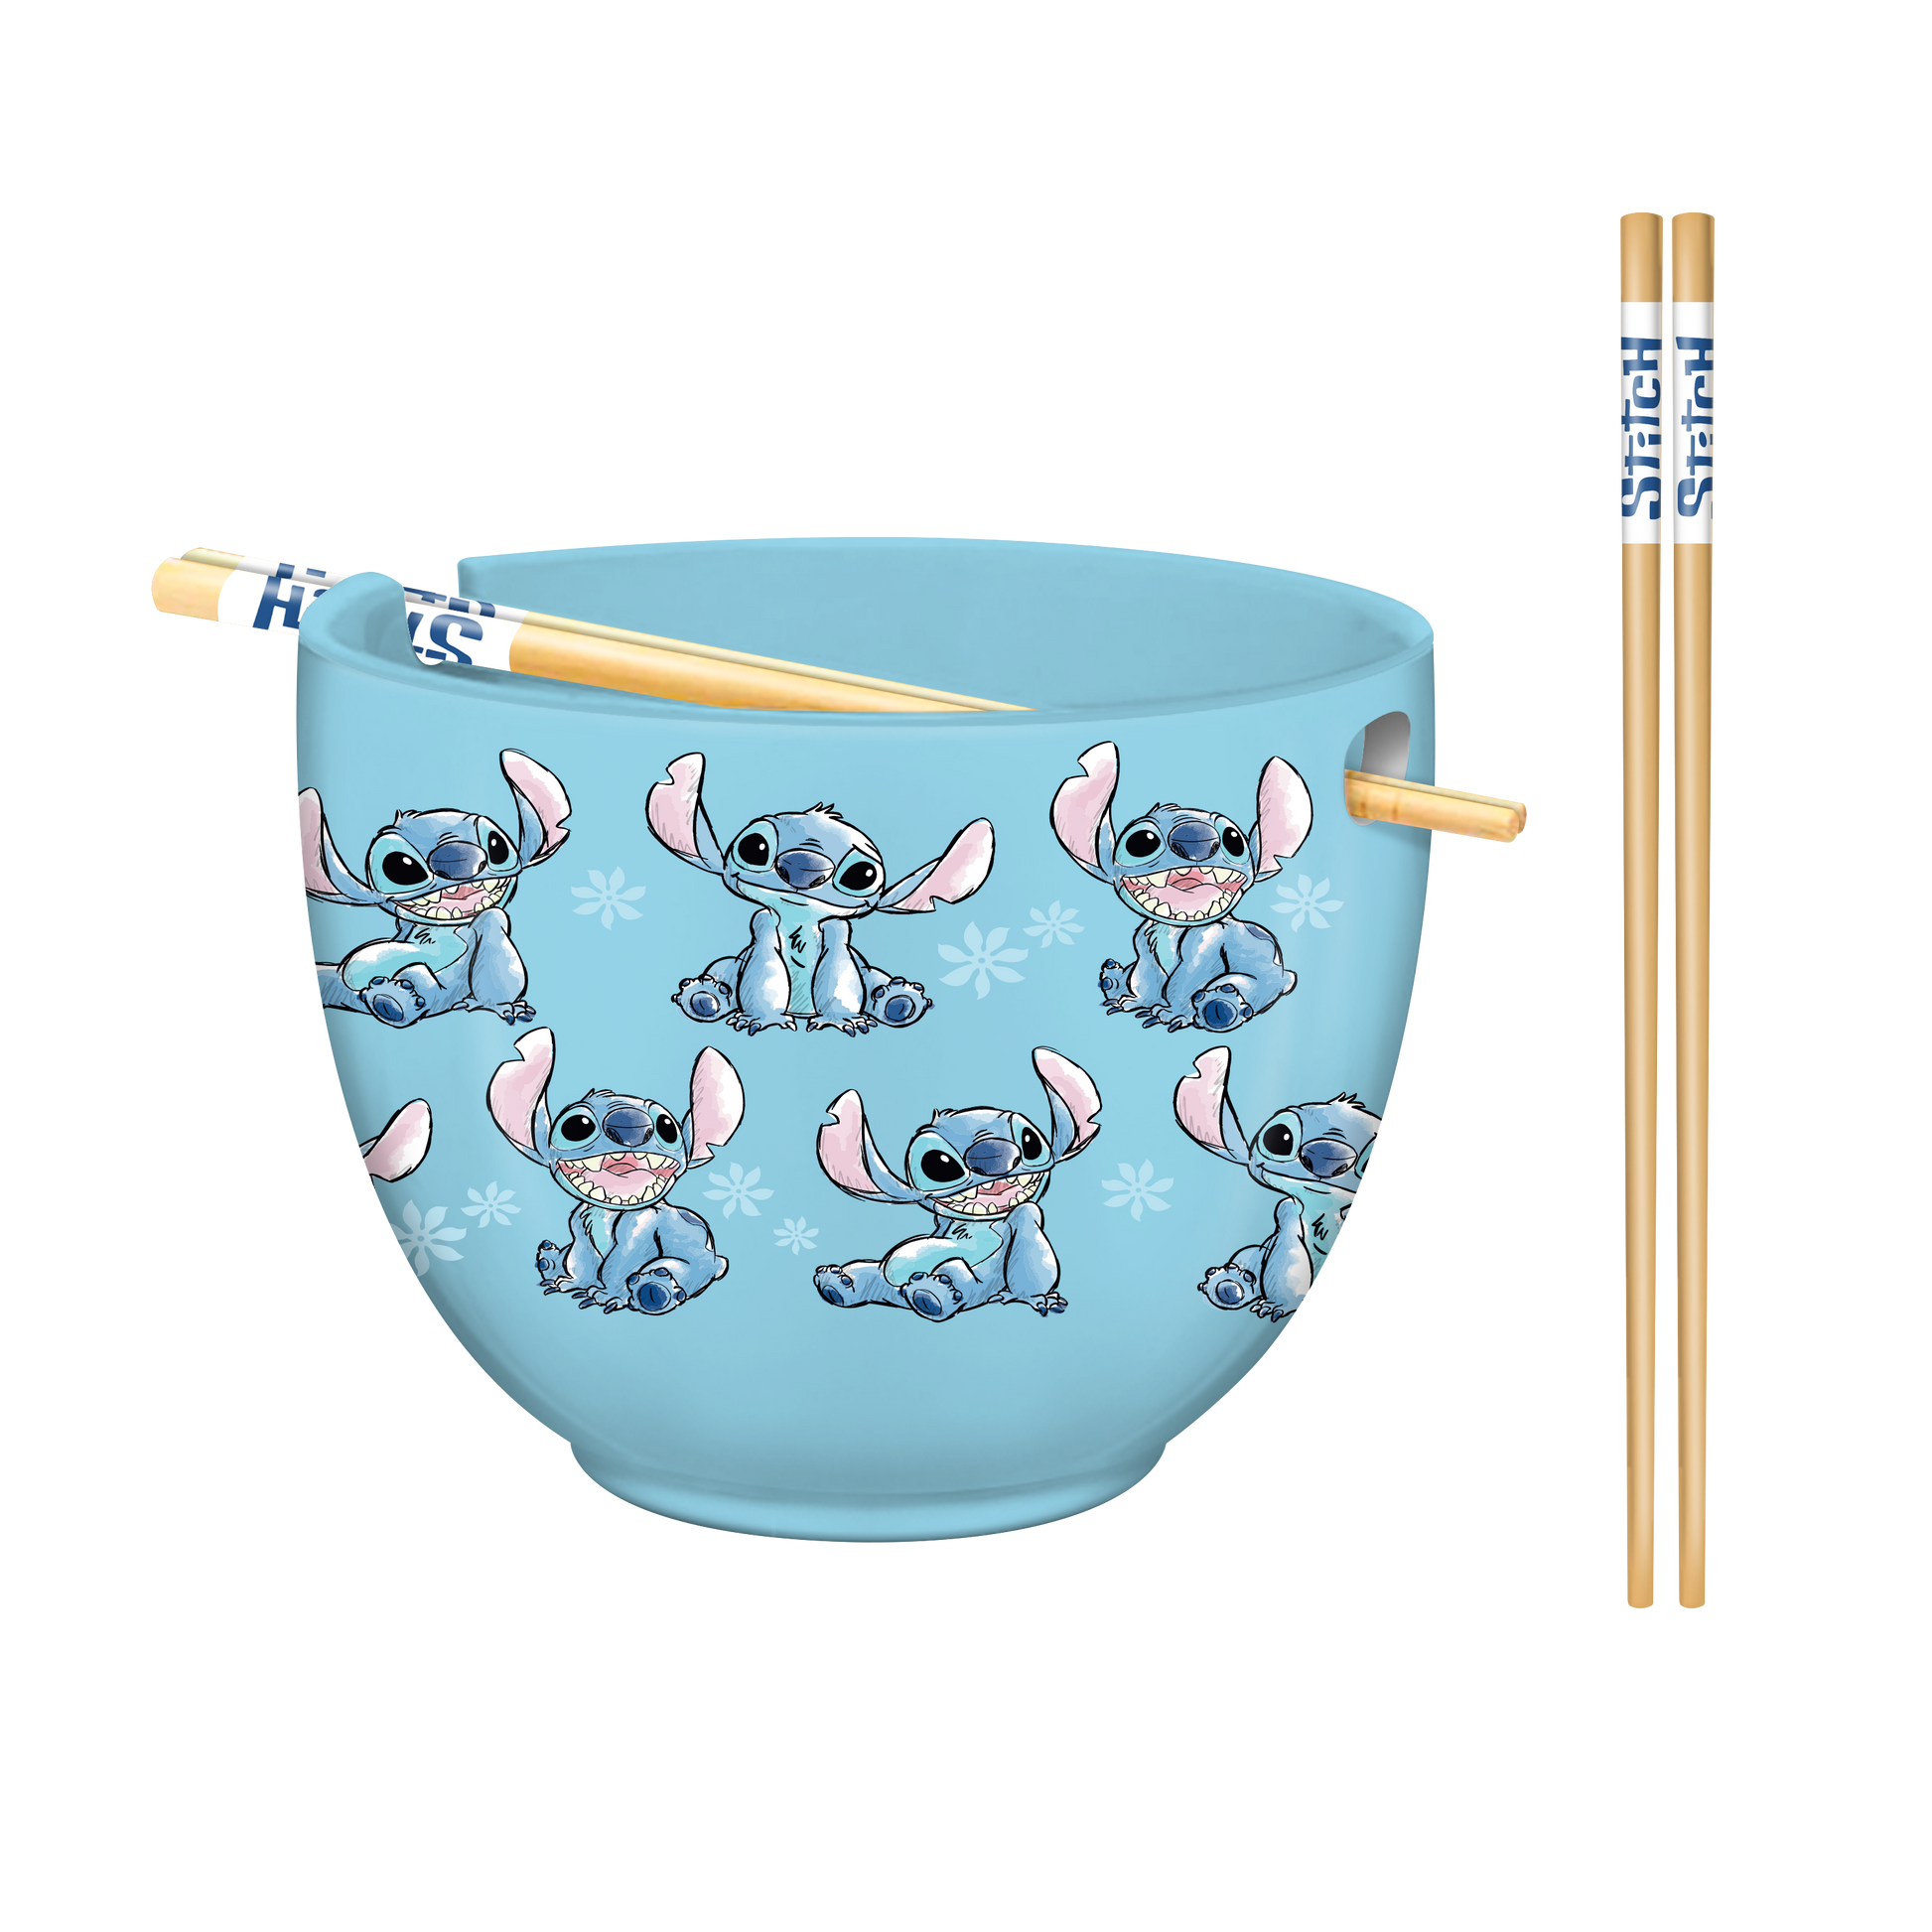 Disney Lilo and Stitch 20oz Ceramic Ramen Bowl with Chopsticks with Retail Band